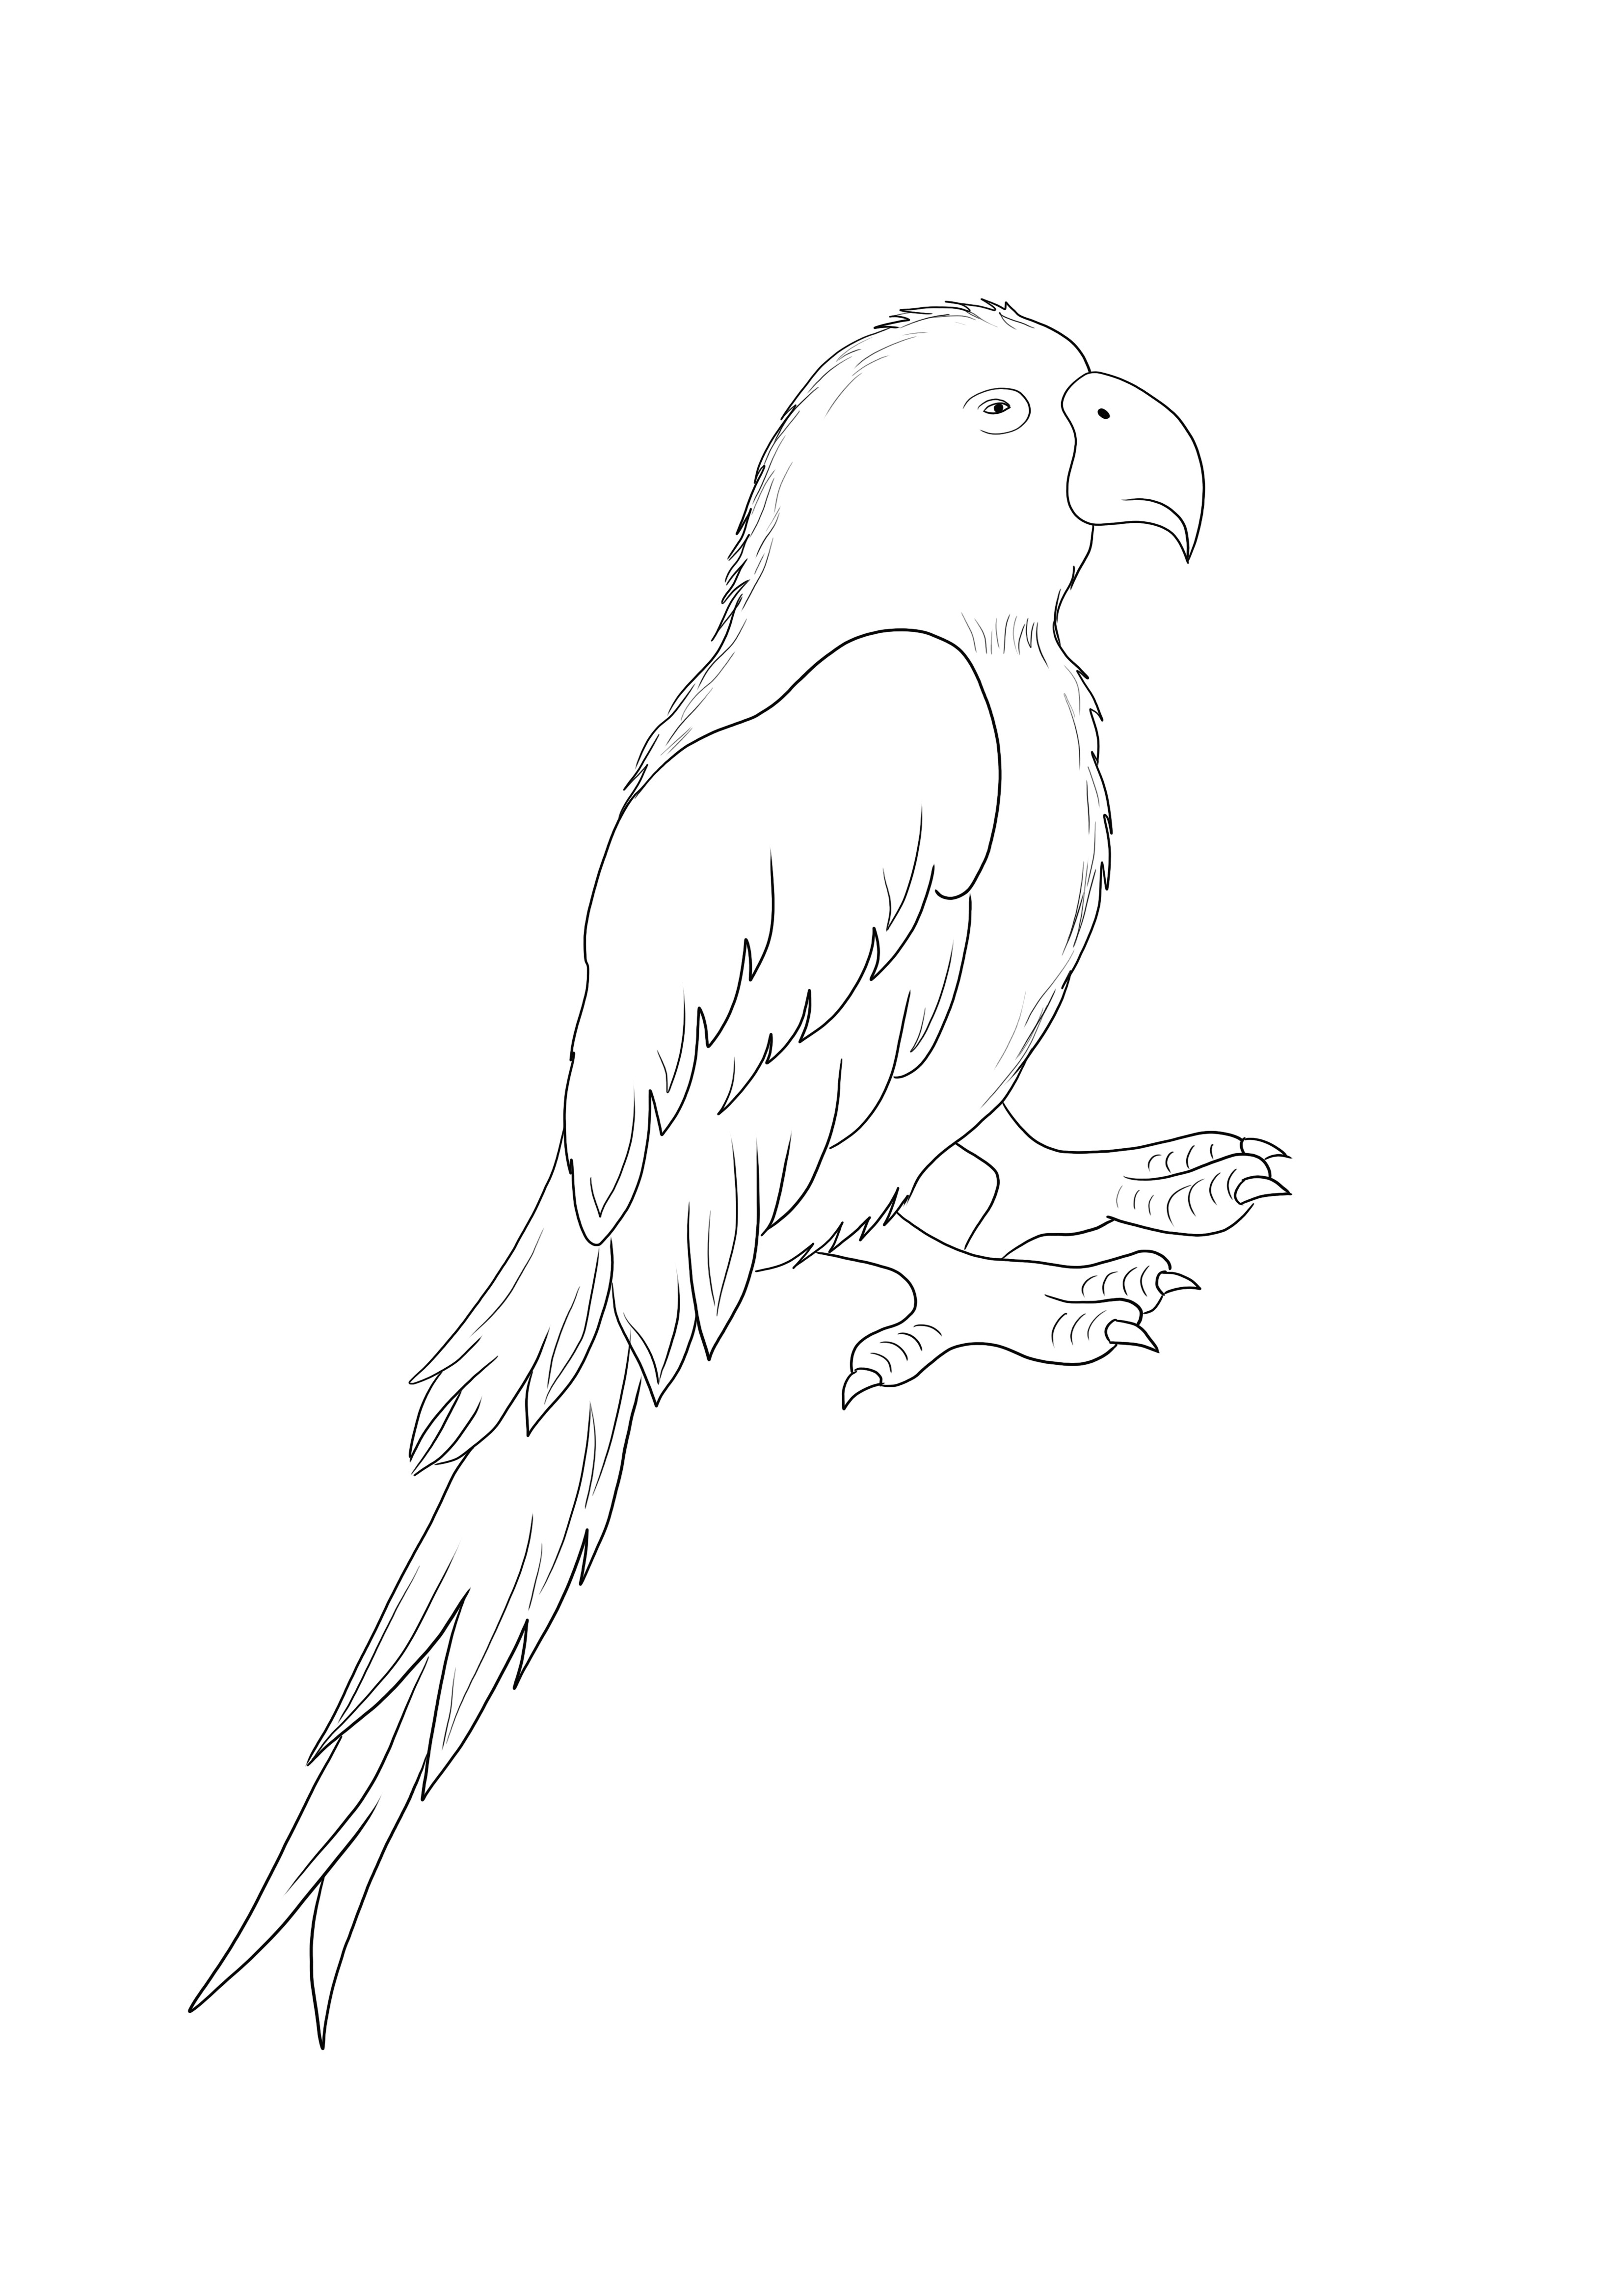 Parrot Bird bebas untuk dicetak dan diwarnai hanya untuk anak-anak dari segala usia